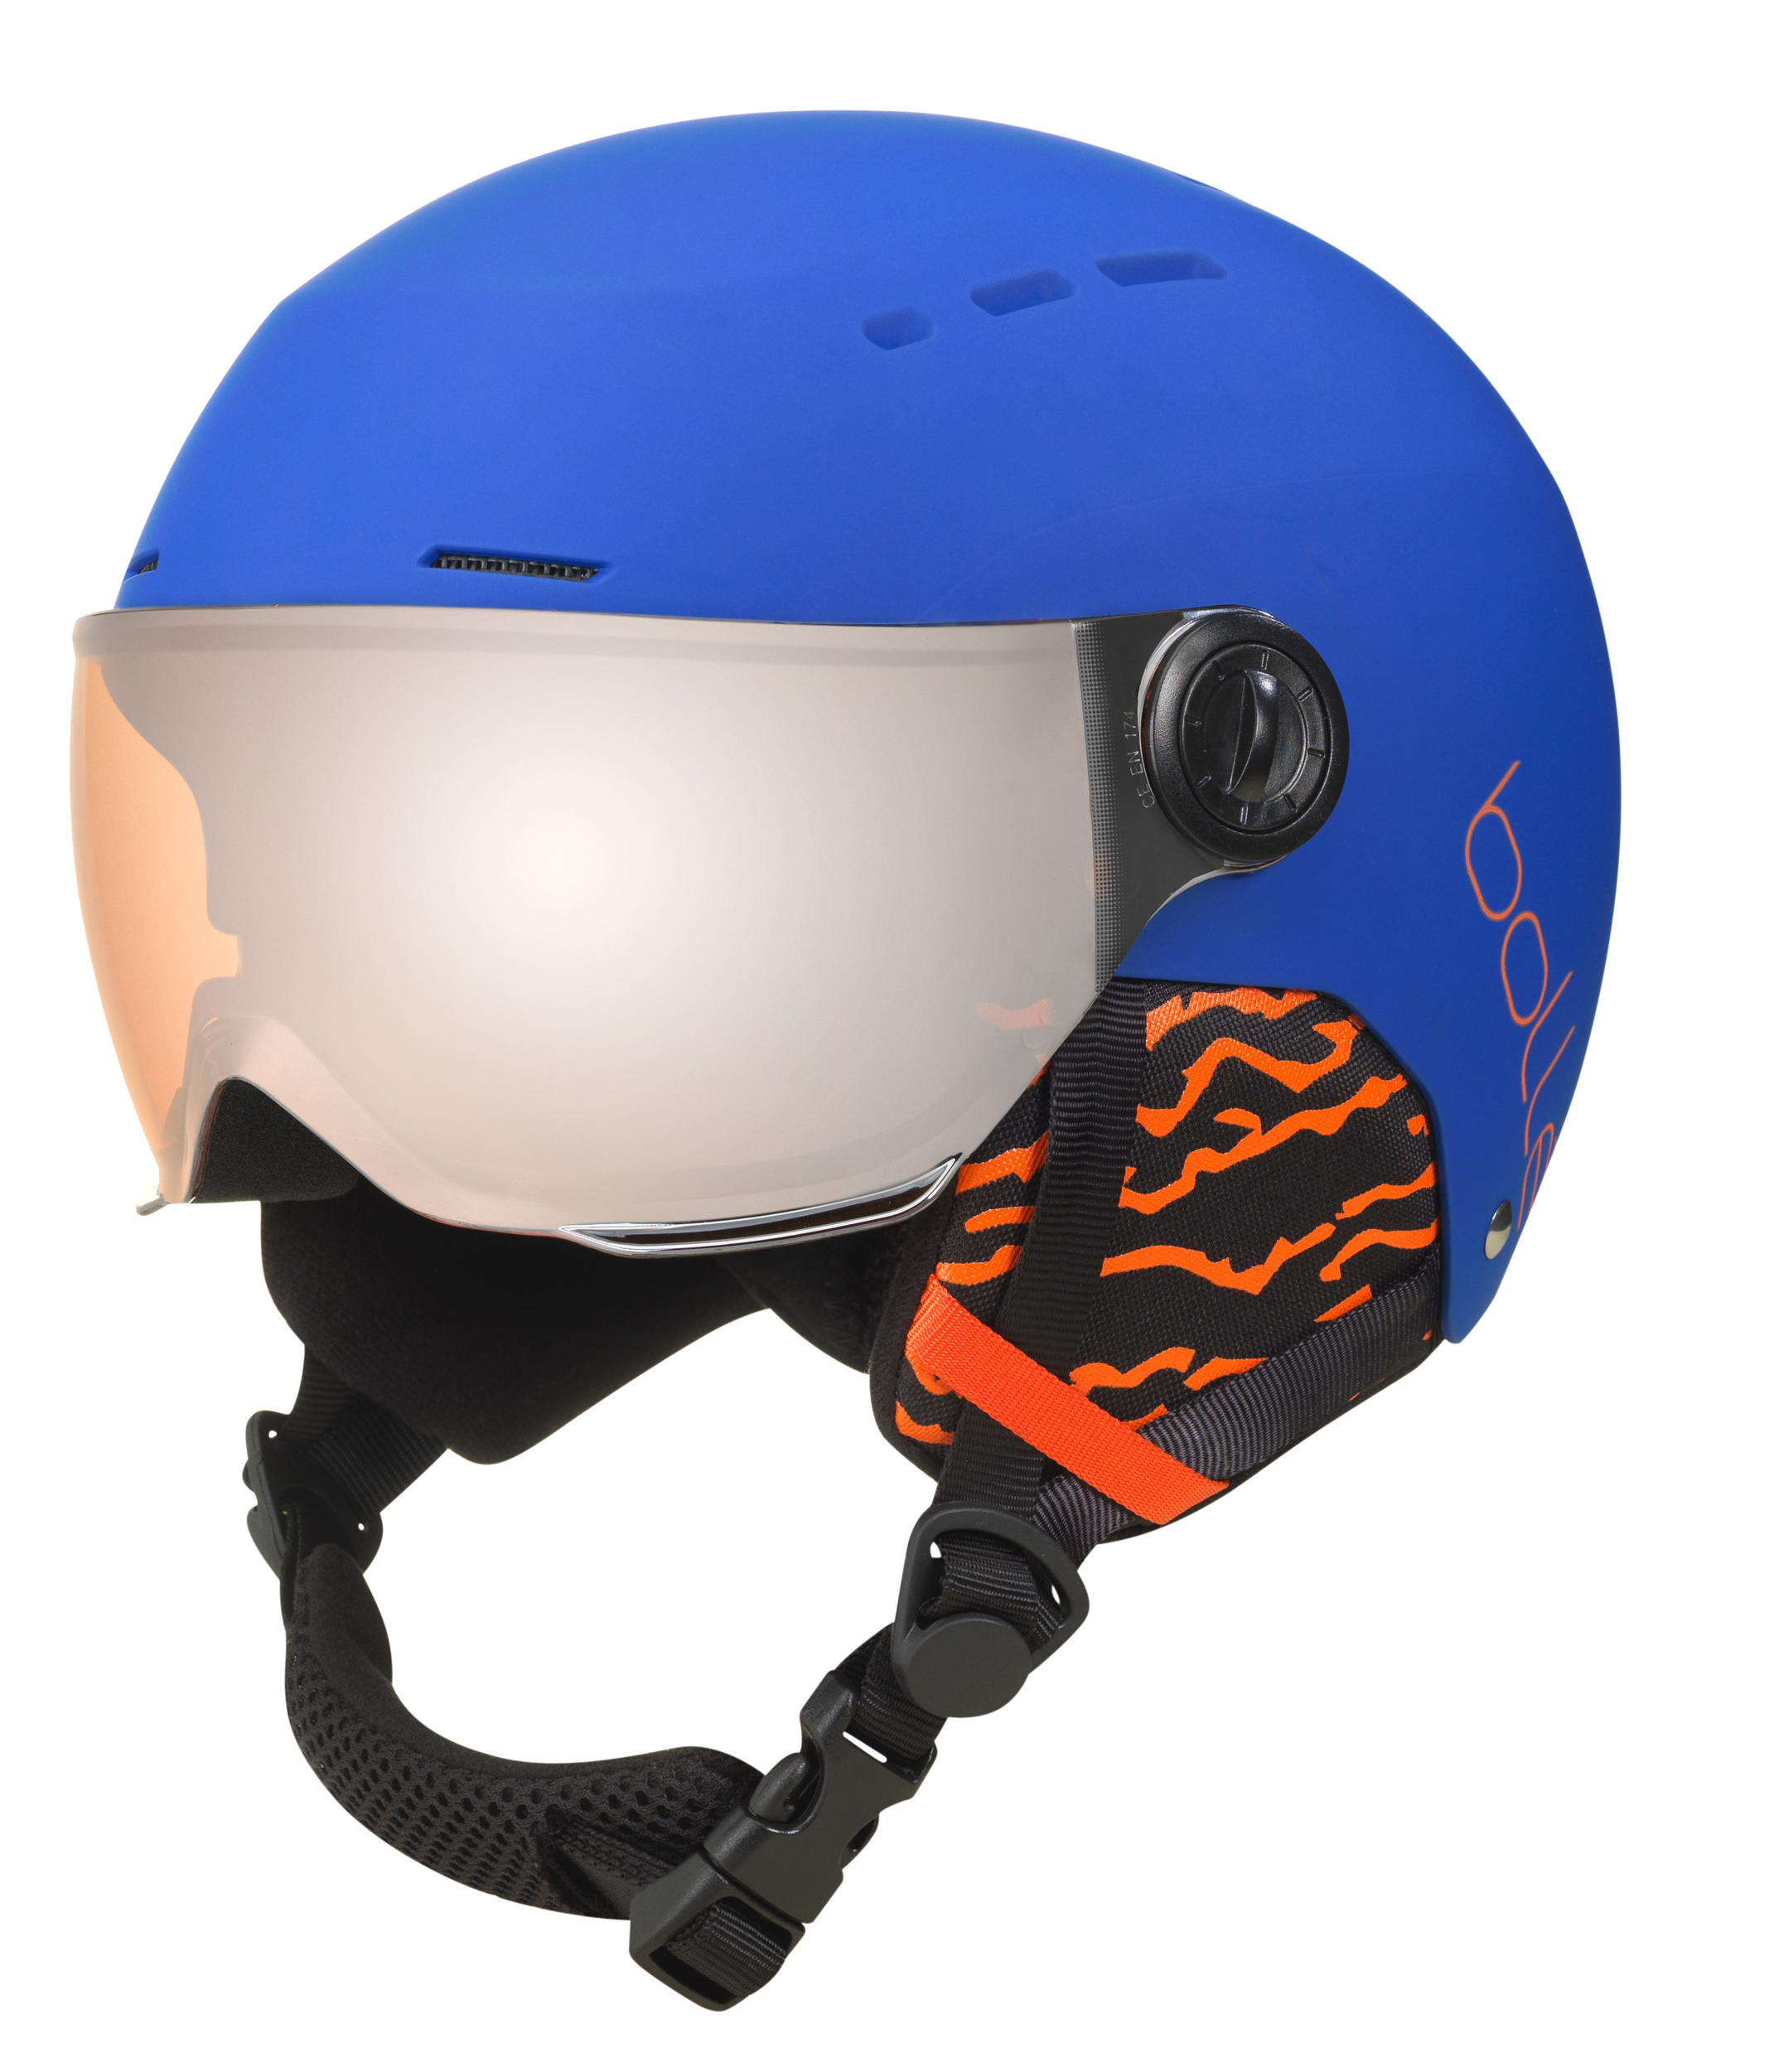 Bollé Masque de Ski Enfant Porteur de Lunette Explorer OTG Shiny White  Vermillon Gun - 21377 - Masques de Ski - IceOptic